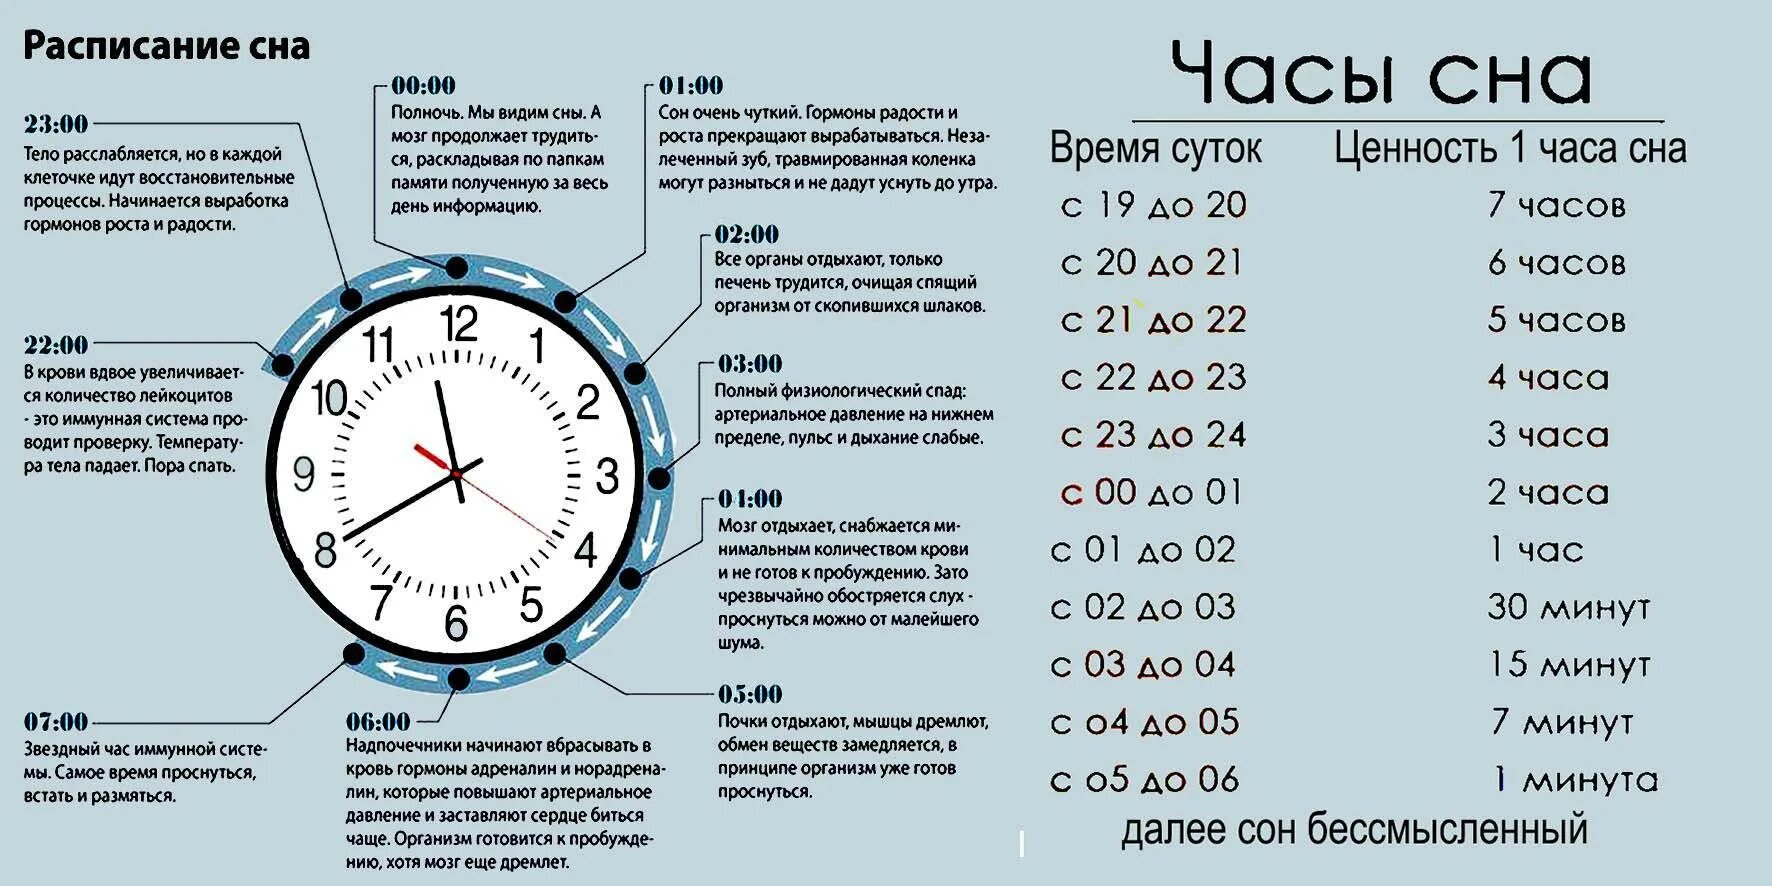 Сколько следующий день. Ценность сна по часам таблица днем. Продуктивность сна по часам таблица. Эффективность сна по часам таблица. Фазы сна по часам таблица.